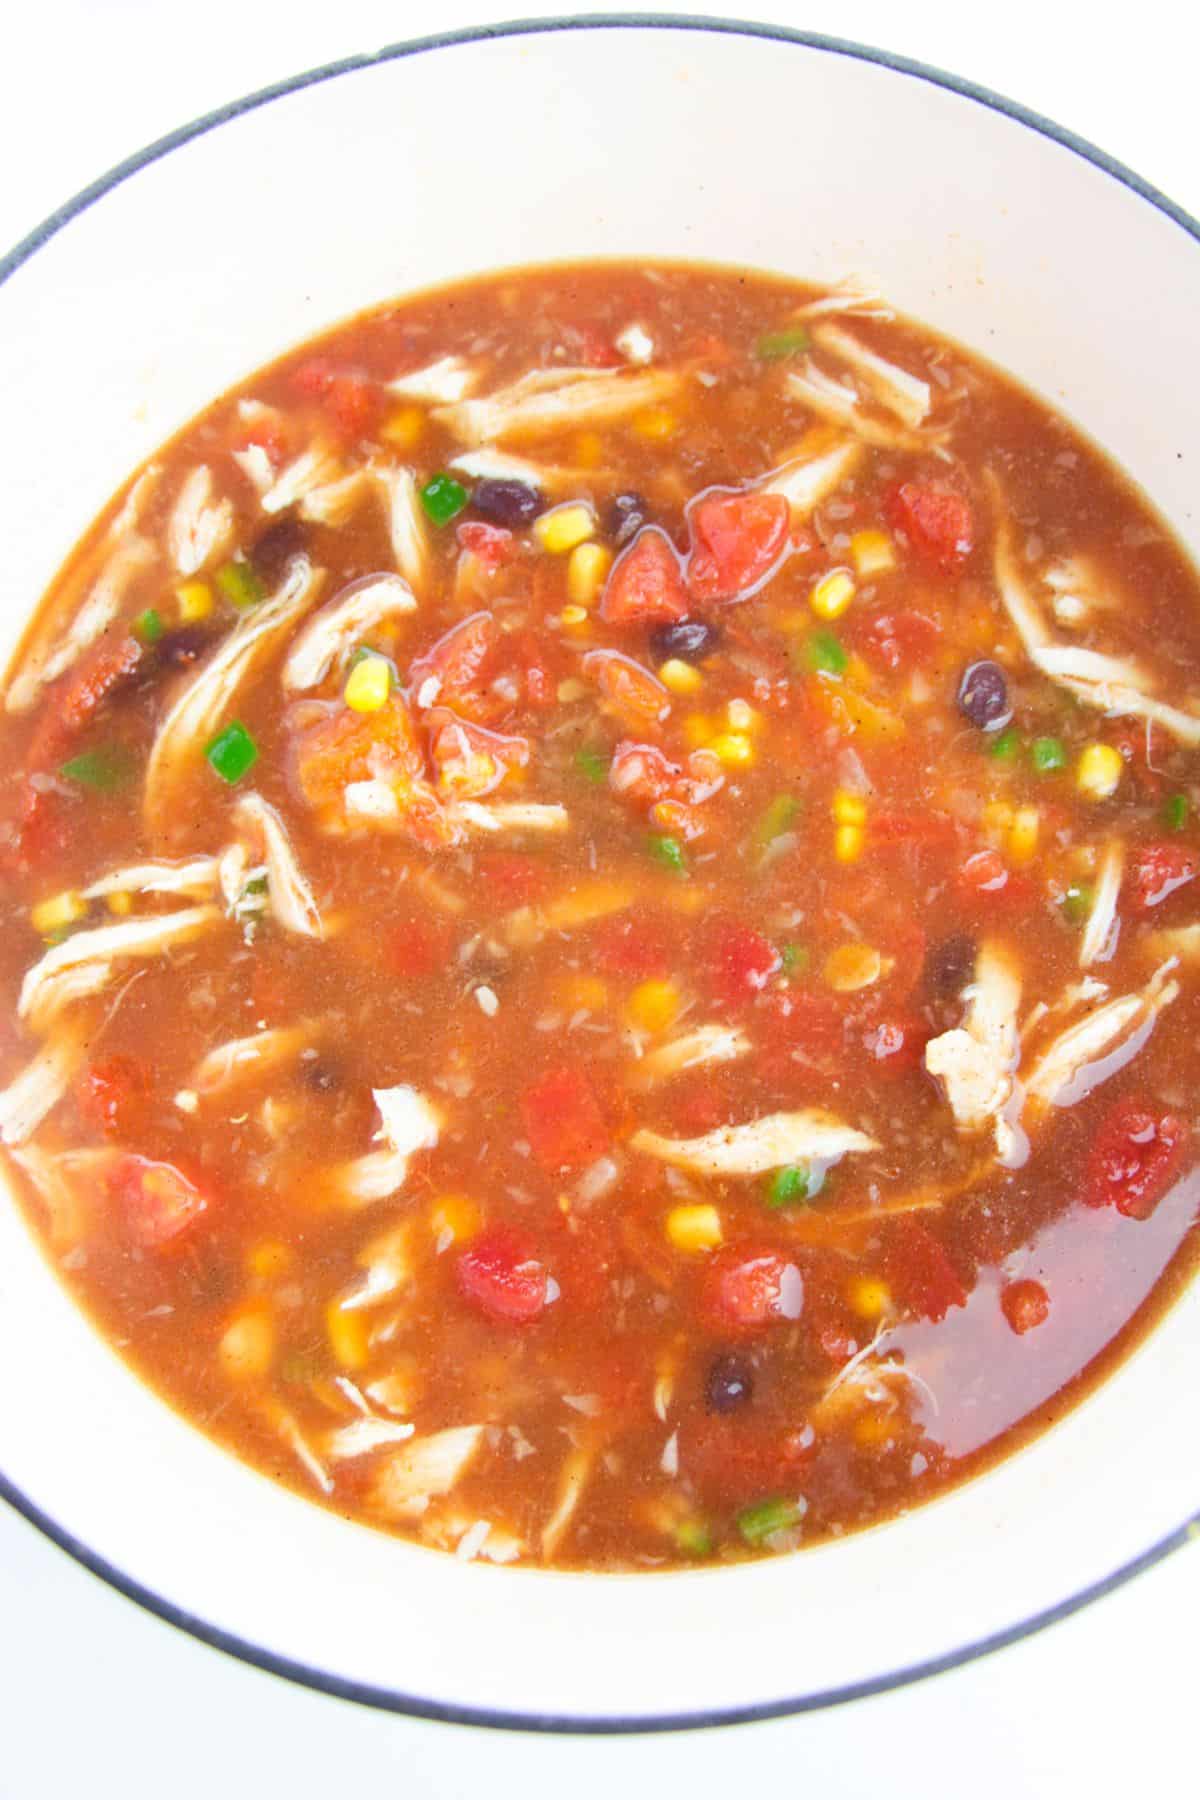 Chicken Tortilla Soup in a soup pot.